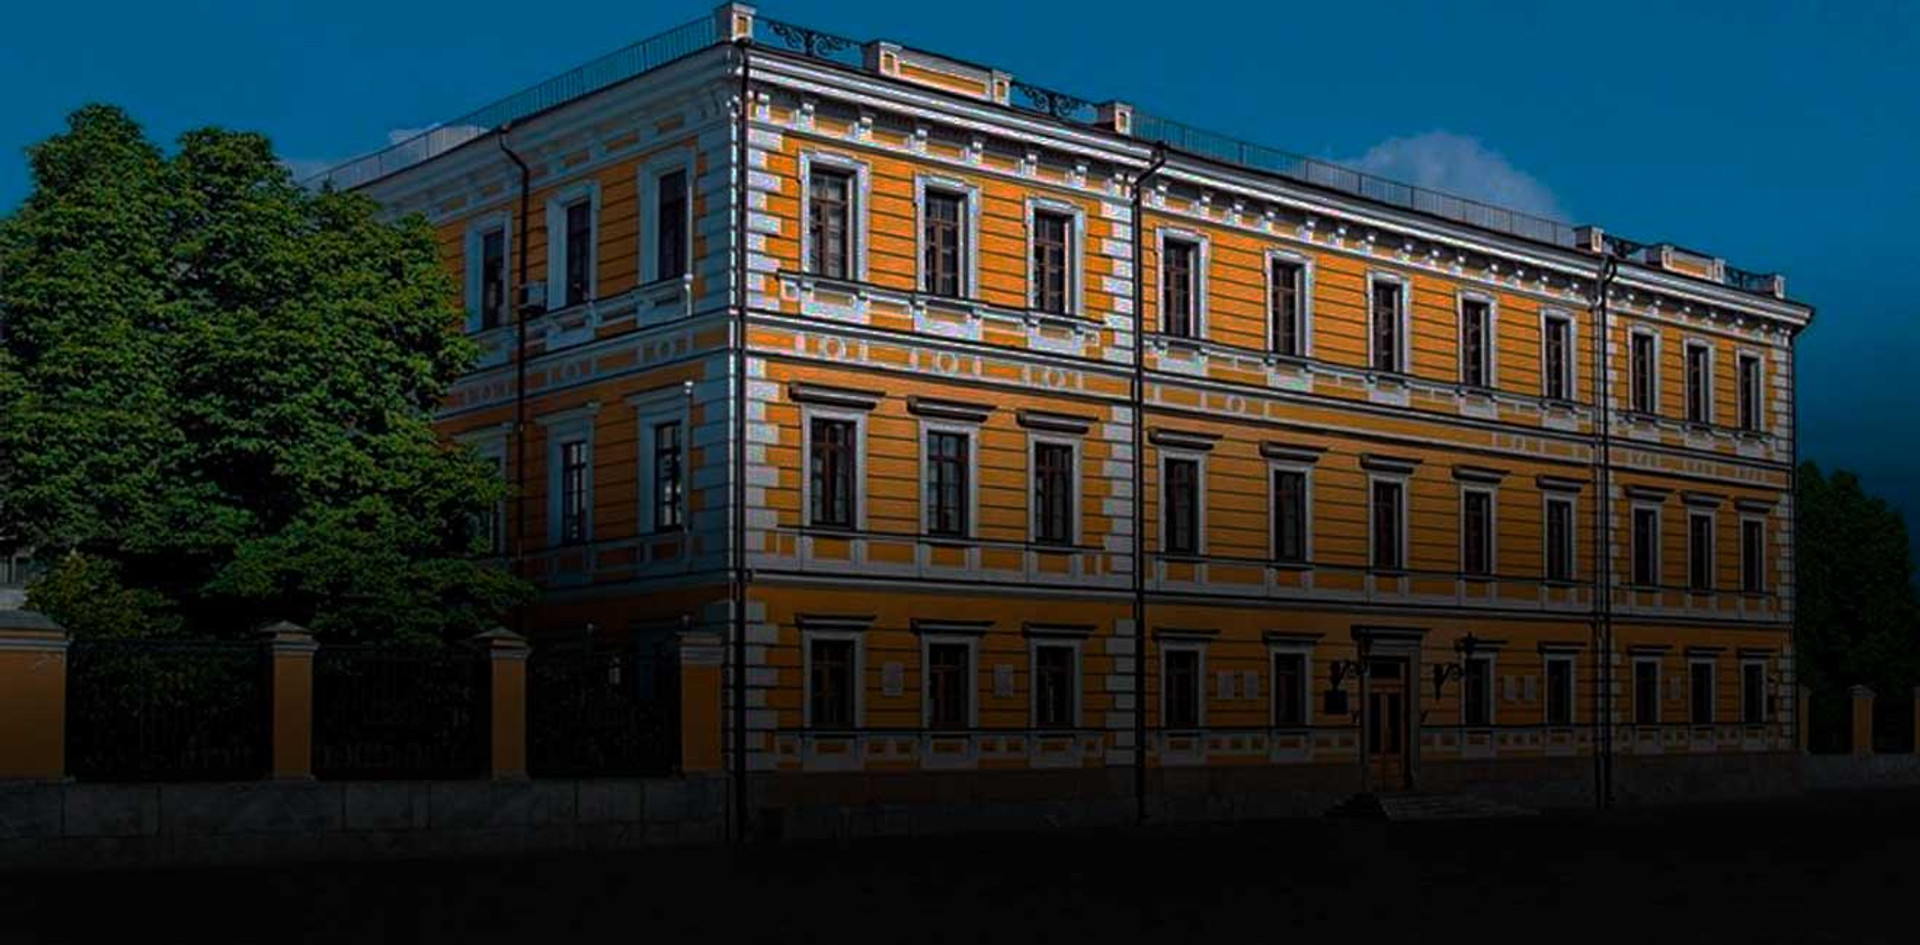 Національна академія наук в медіа: 33 речі, які варто знати тим, хто хоче писати про науку в Україні